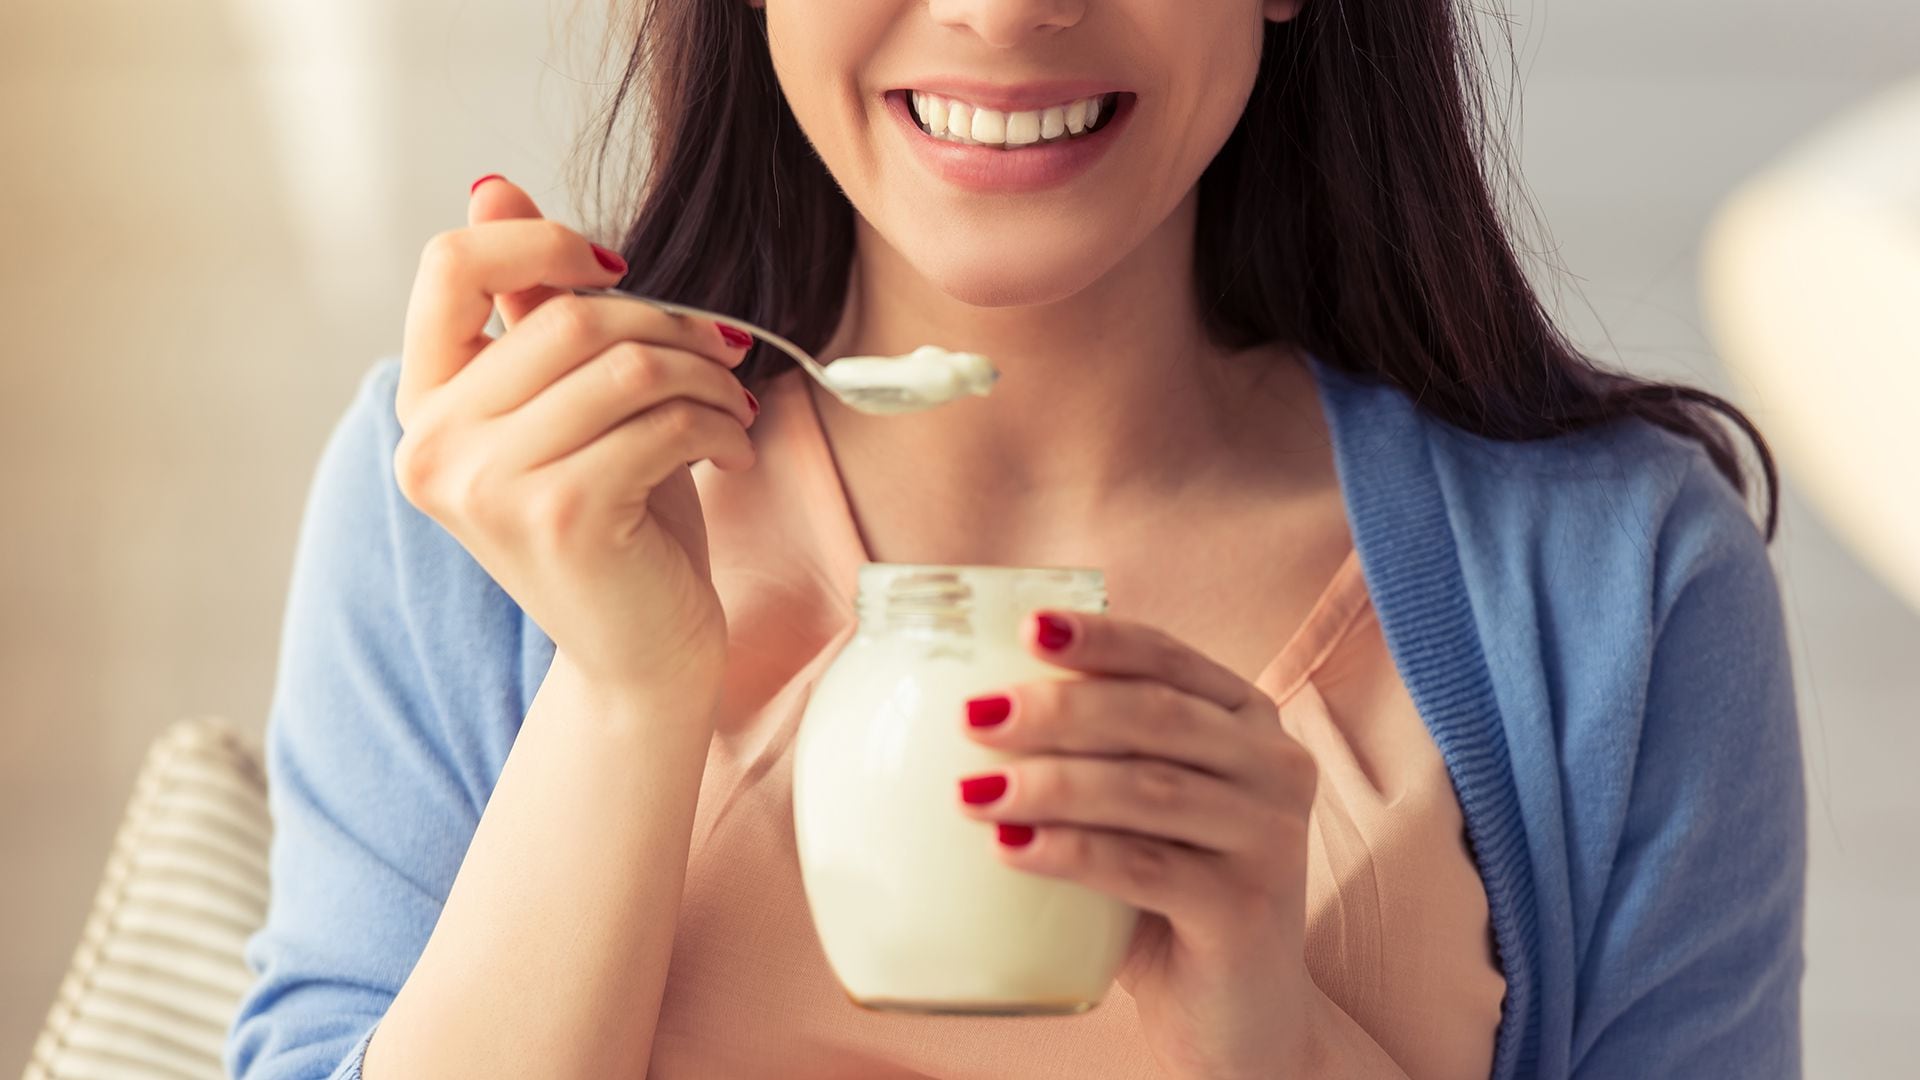  El yogur natural contribuye con potasio, proteínas y los probióticos saludables/Archivo